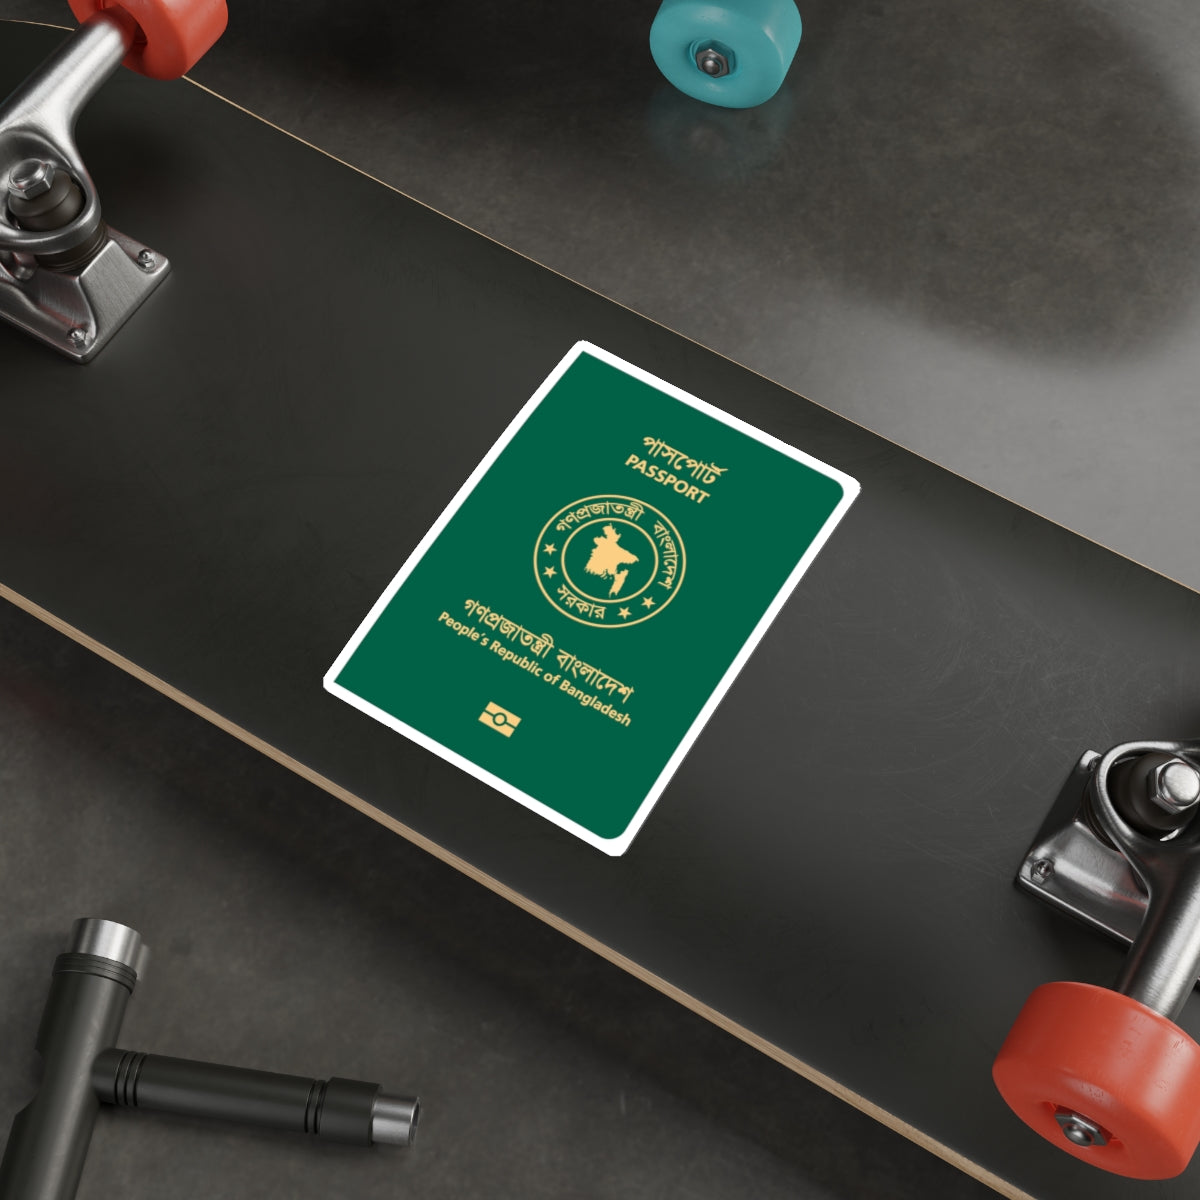 Bangladeshi E-Passport STICKER Vinyl Die-Cut Decal-The Sticker Space